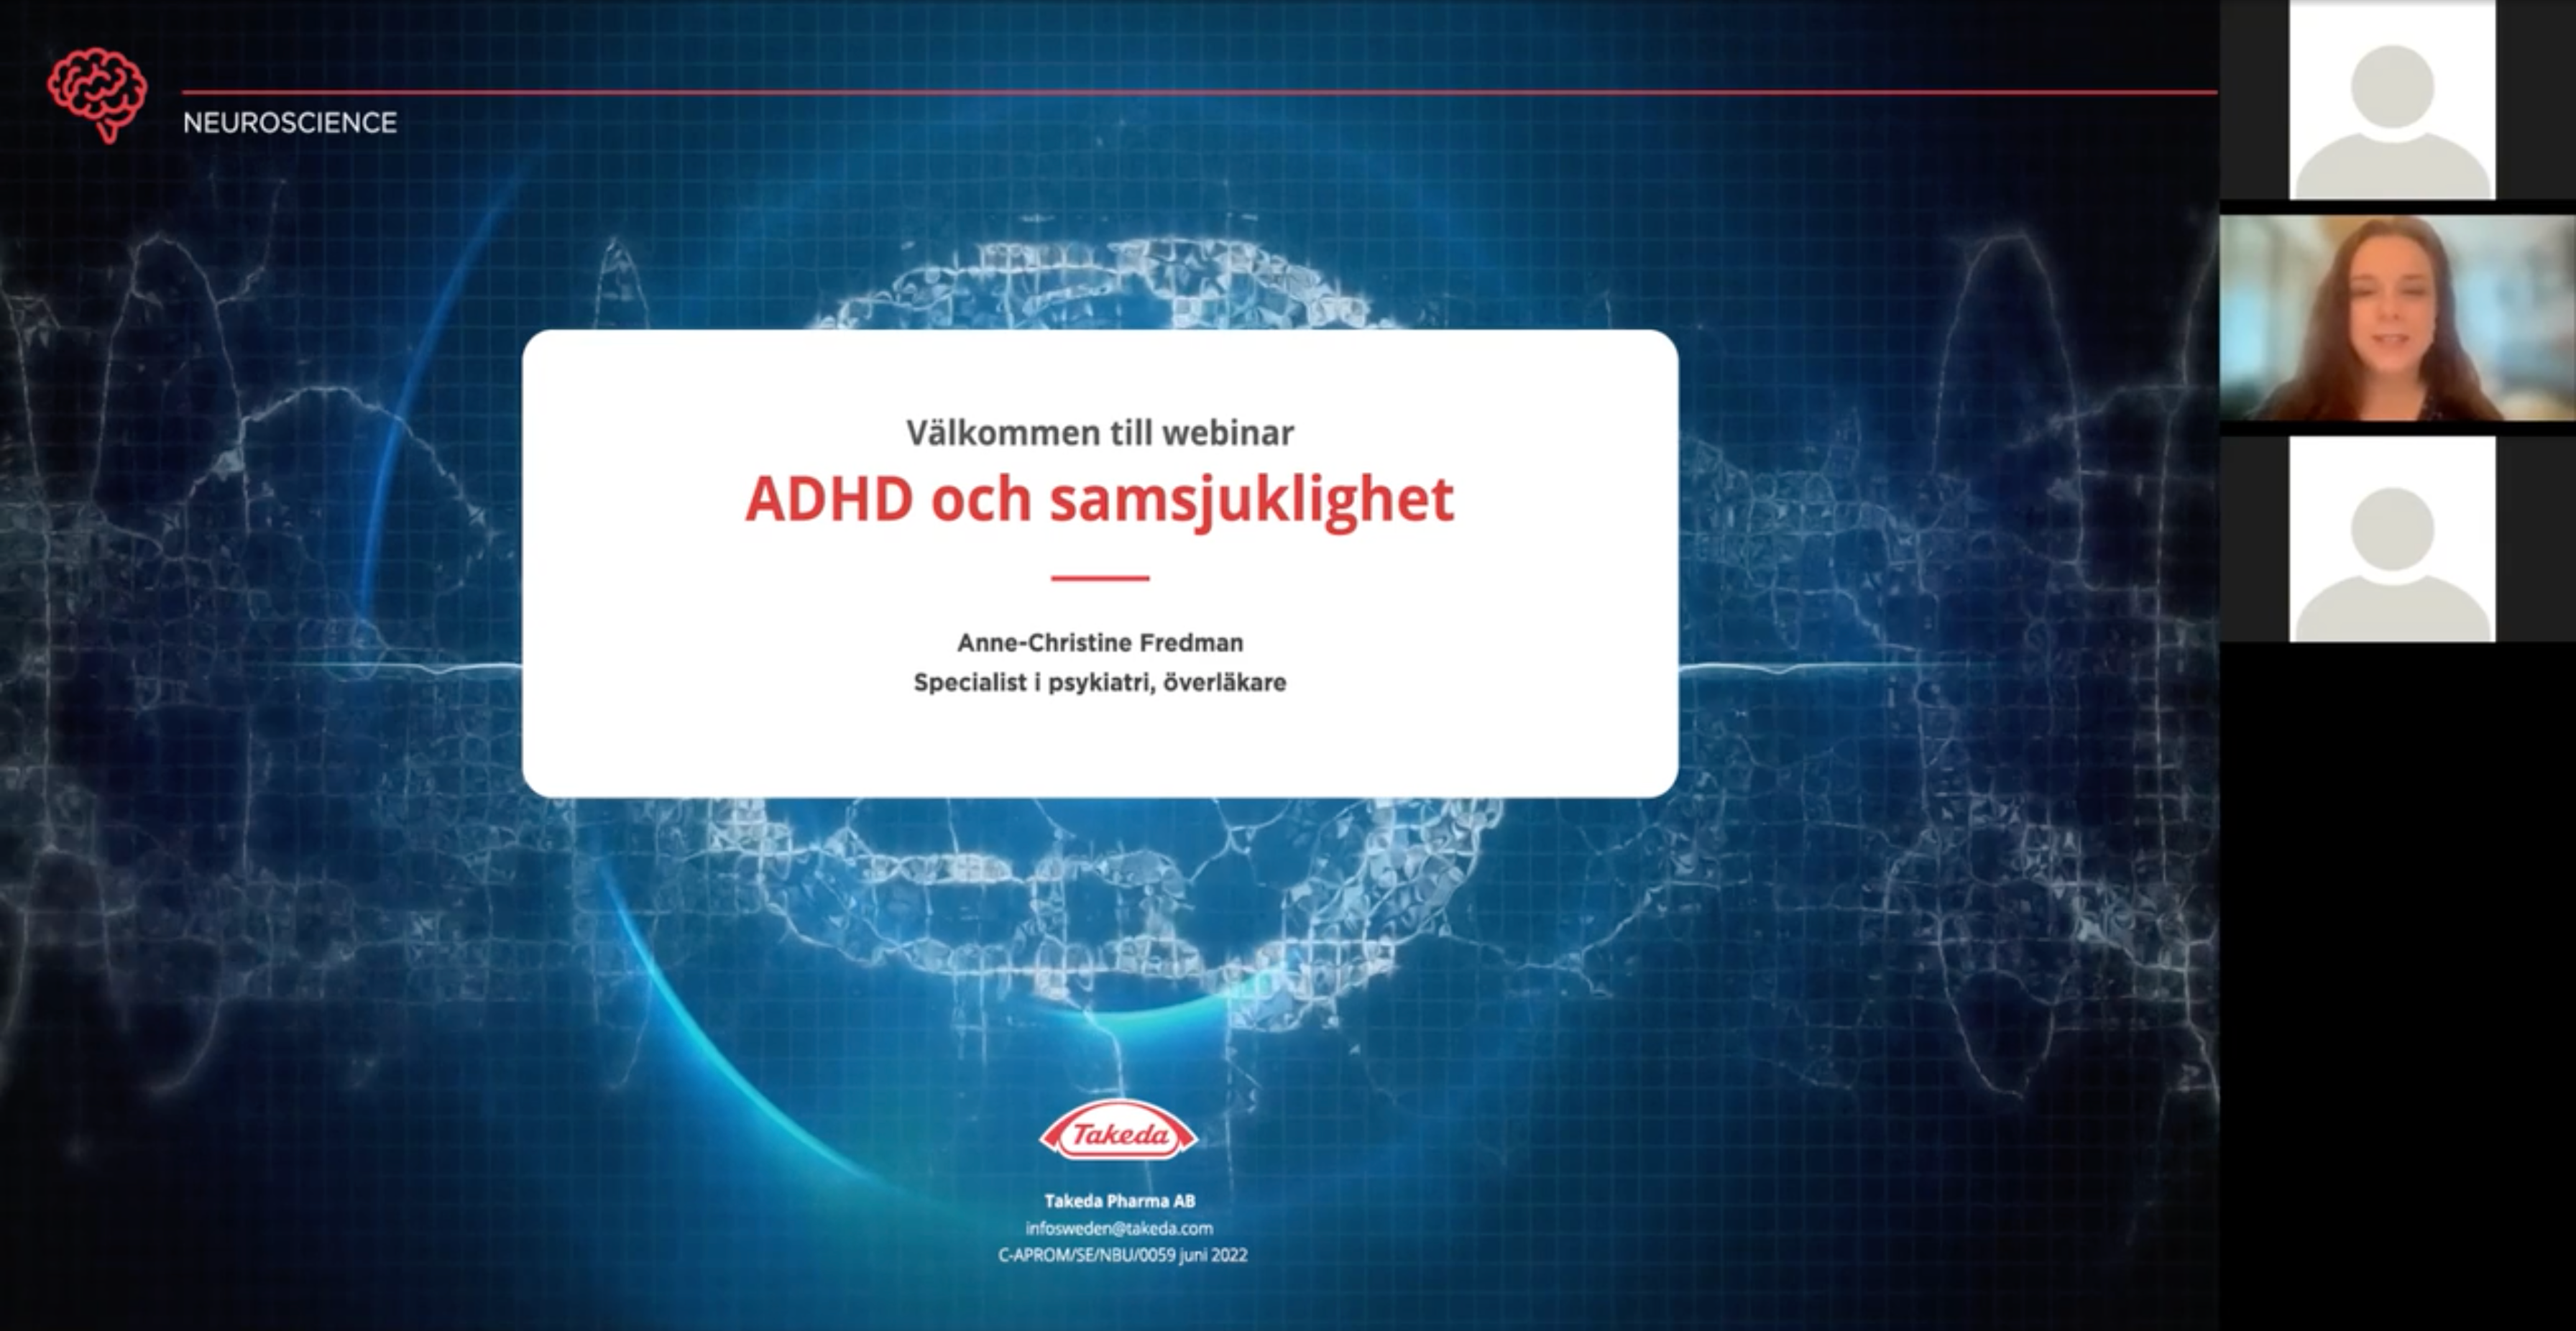 ADHD och samsjuklighet webinar startscreen